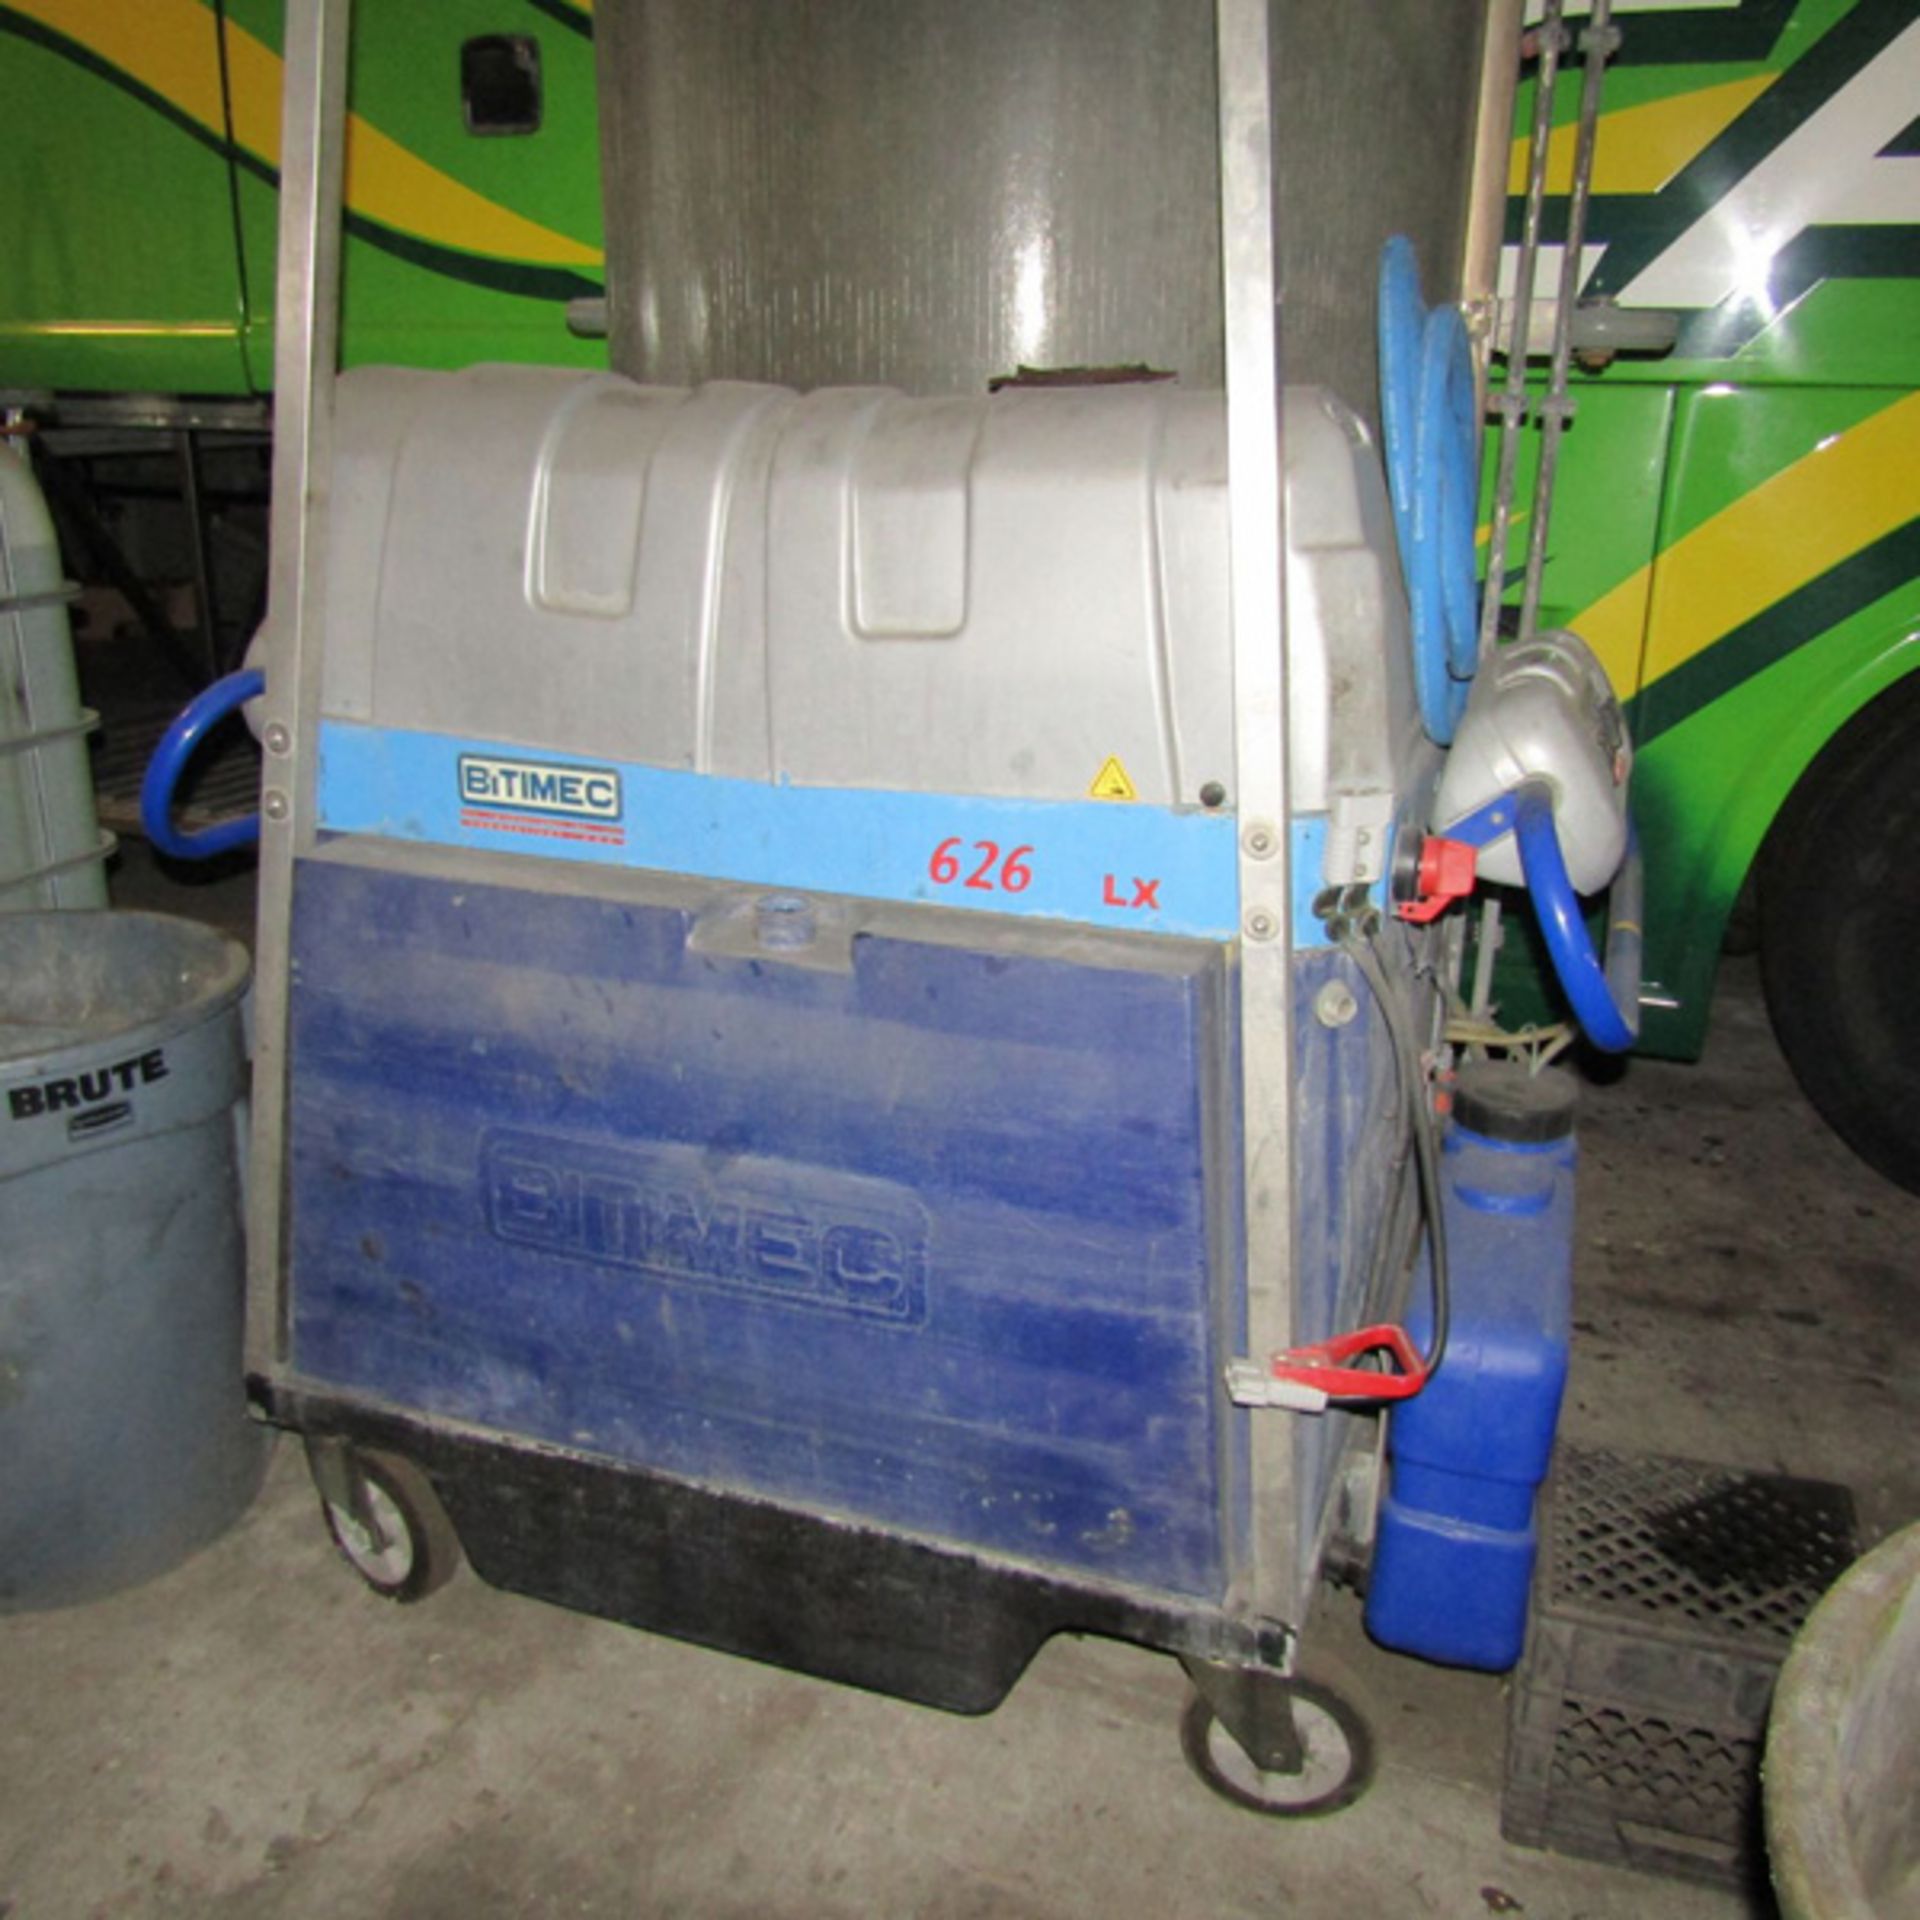 Bitimec 626 Bus/Truck Washing Machine , Located In: Indianapolis, IN - Bild 2 aus 2